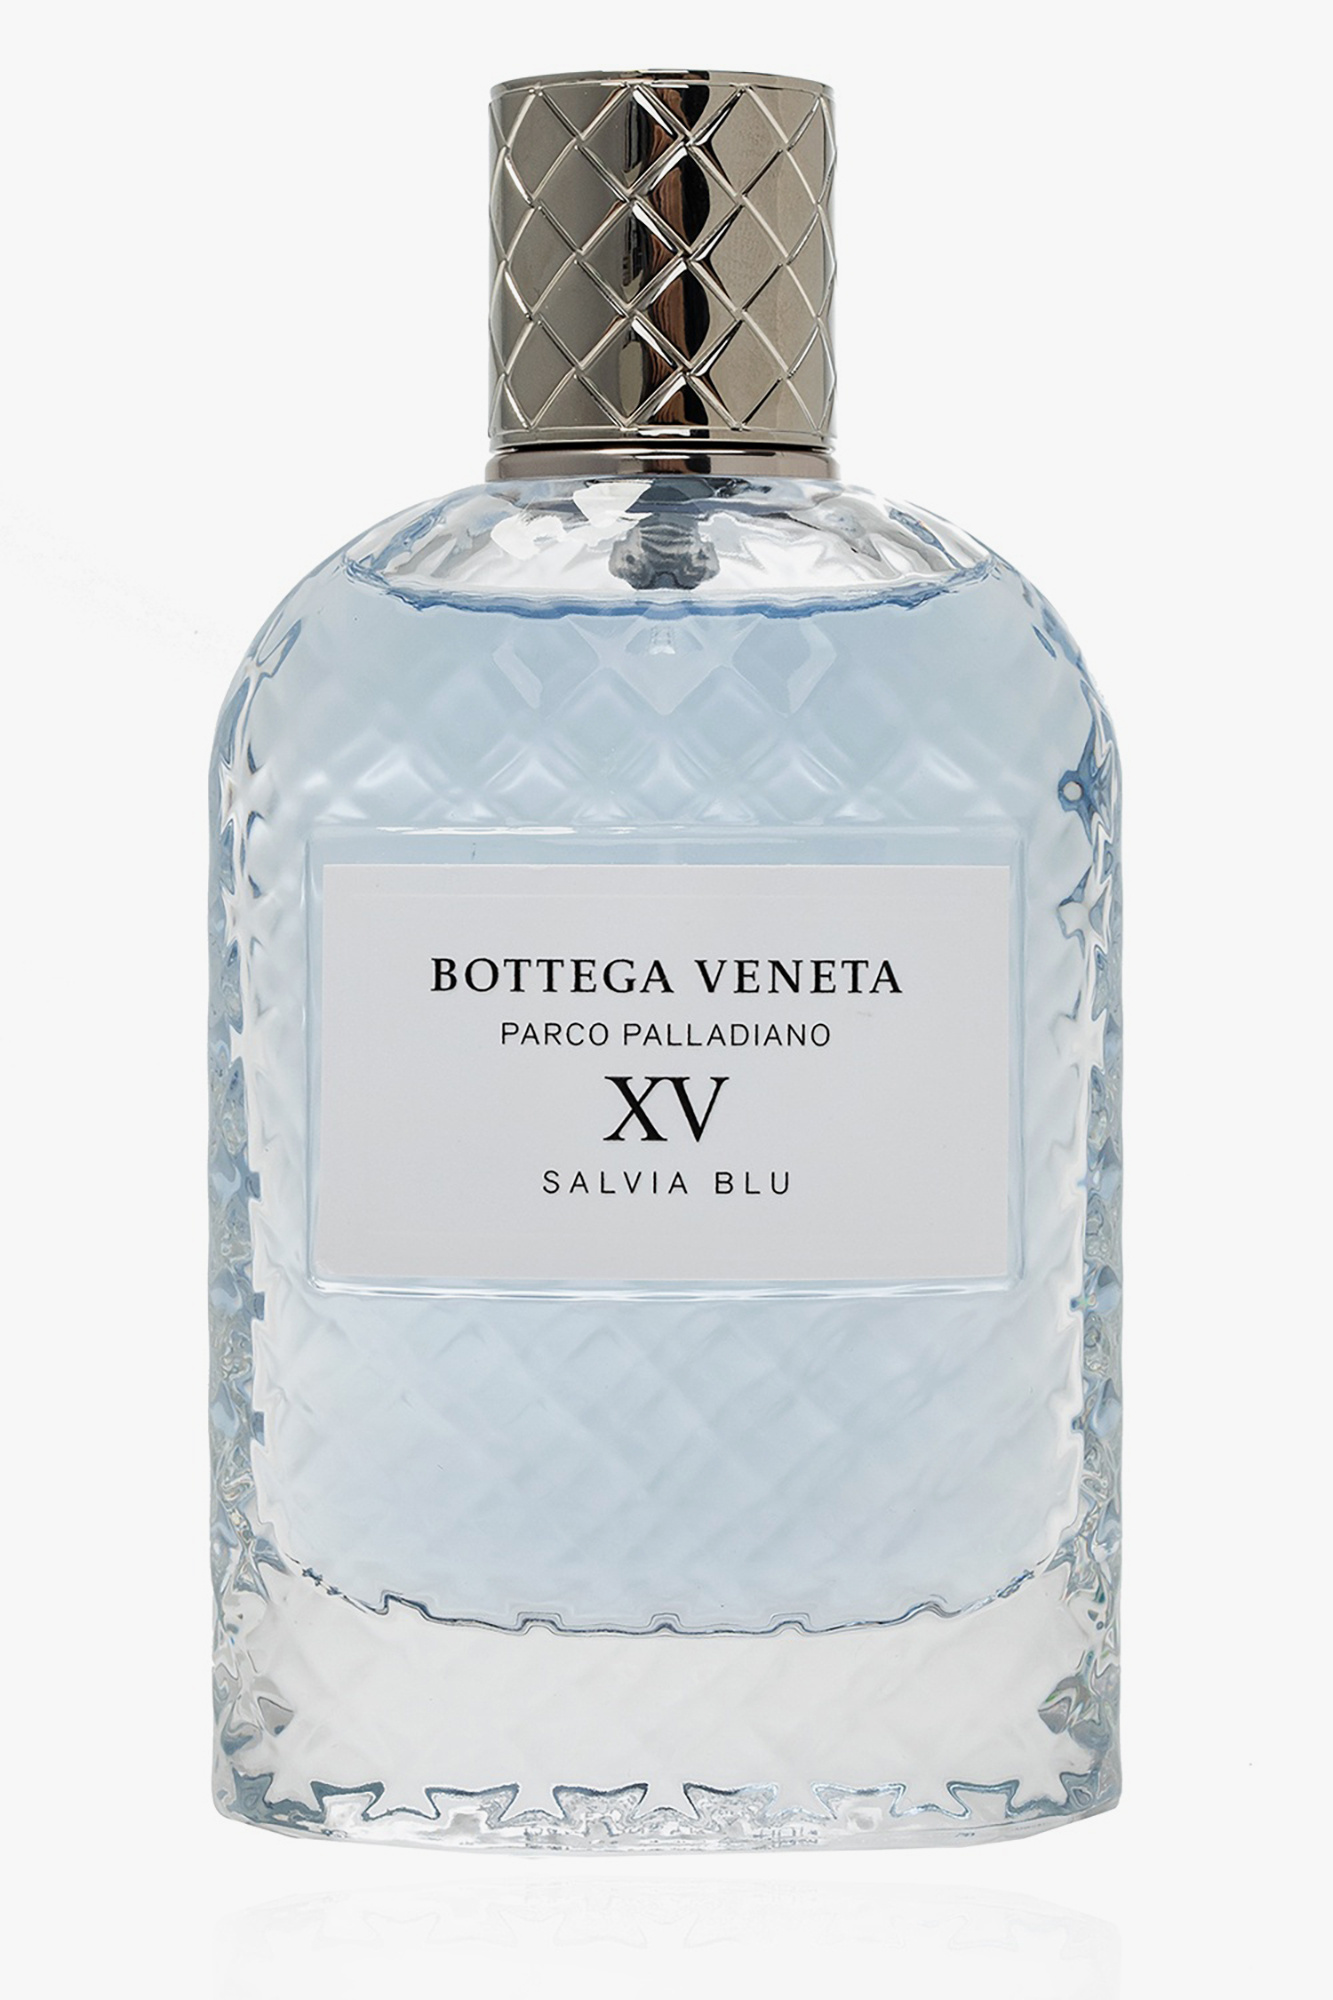 ‘Parco Palladiano XV Salvia Blu’ eau de parfum Bottega Veneta - Vitkac HK